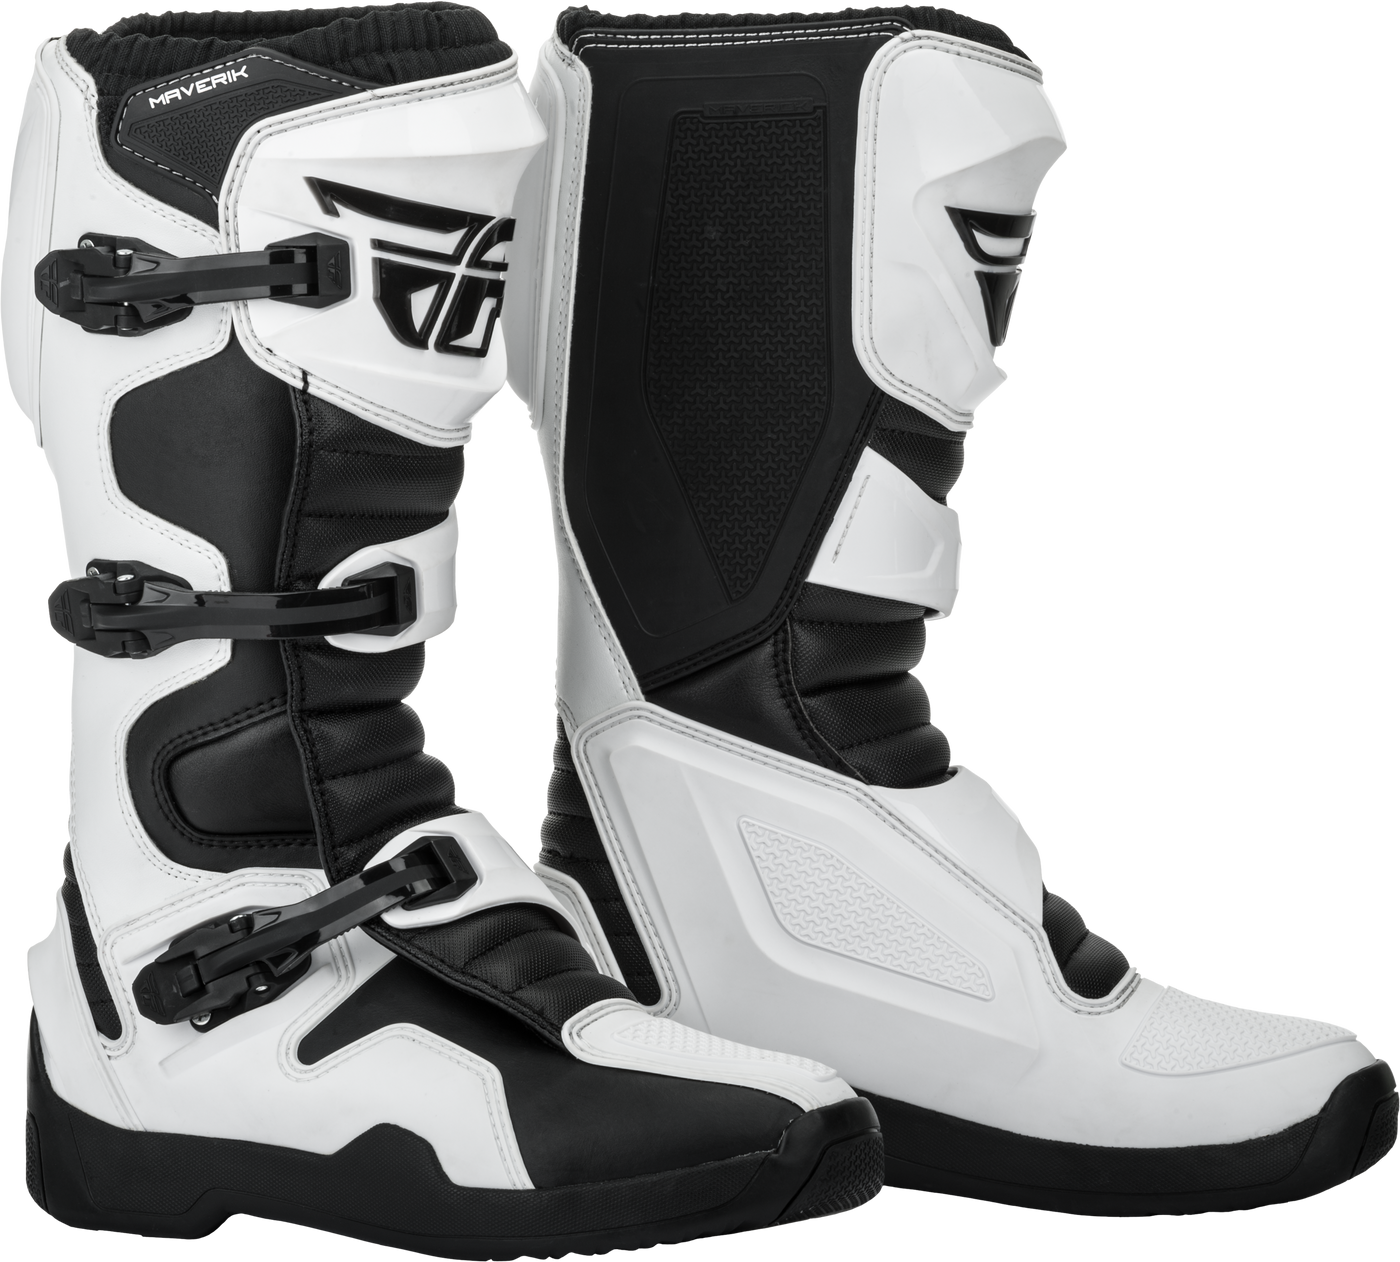 Maverik Boots Grey/black Sz 14